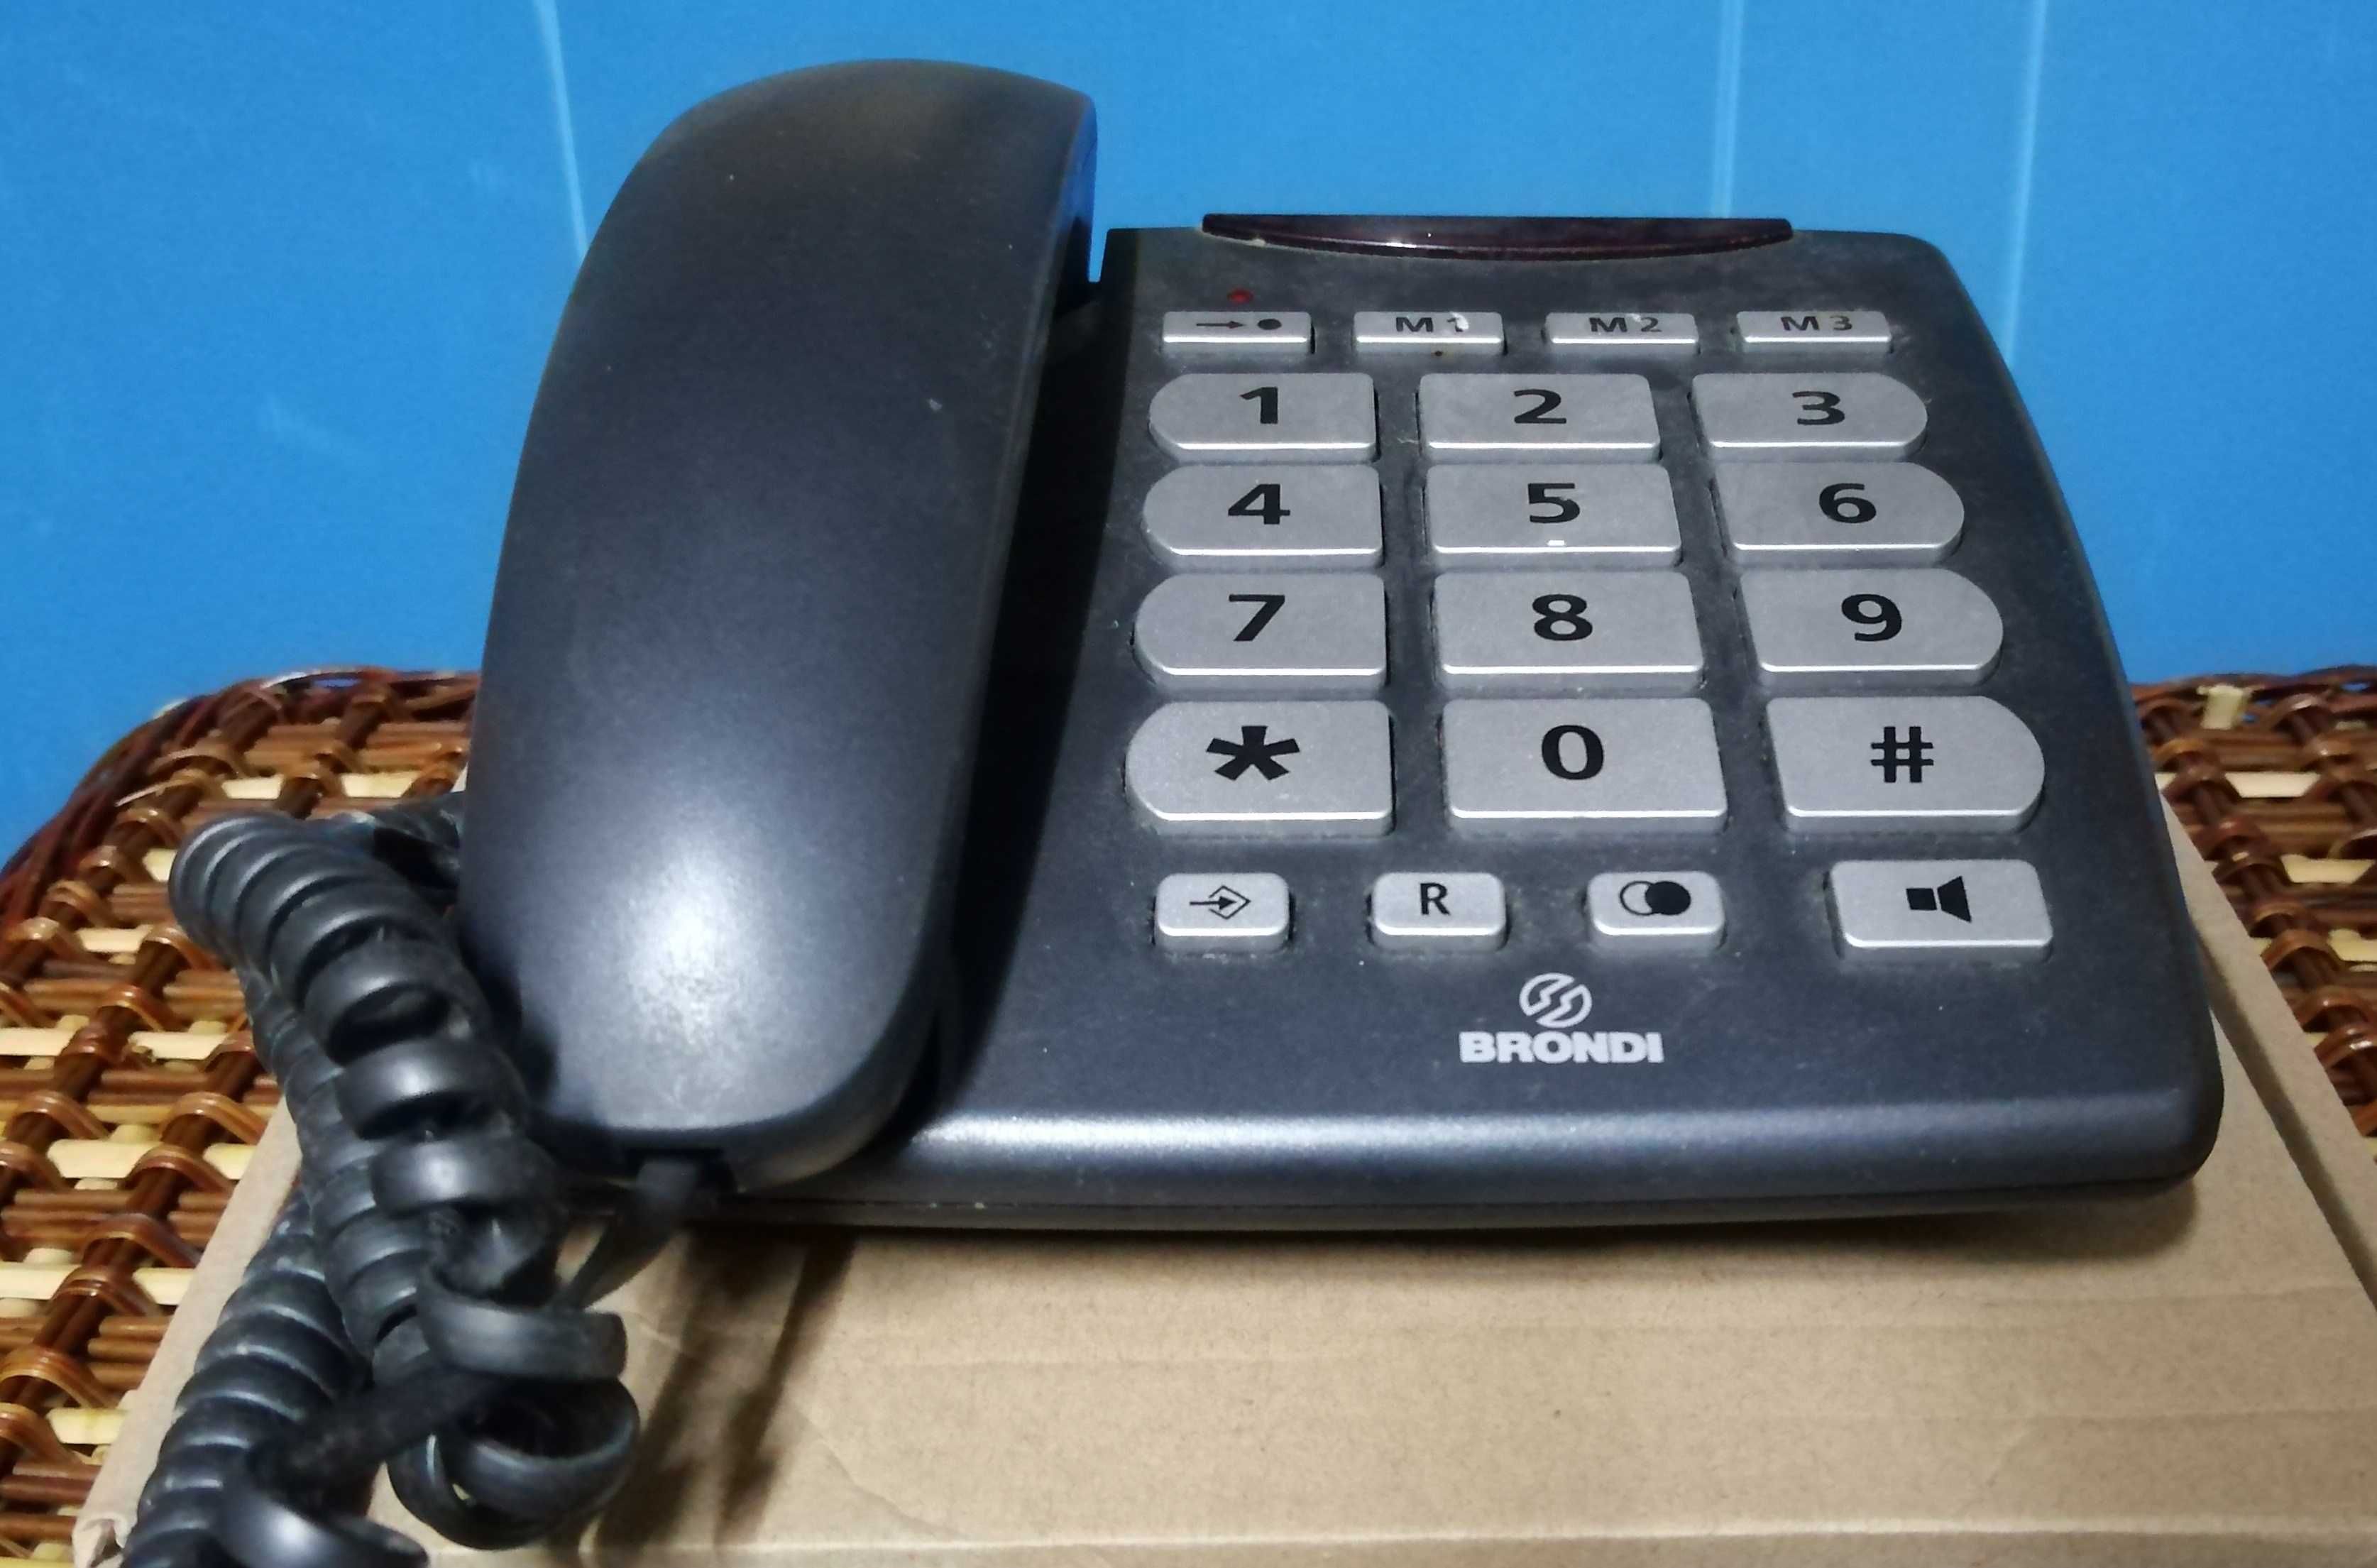 Telefone fixo com teclas grandes (muito útil para idosos)